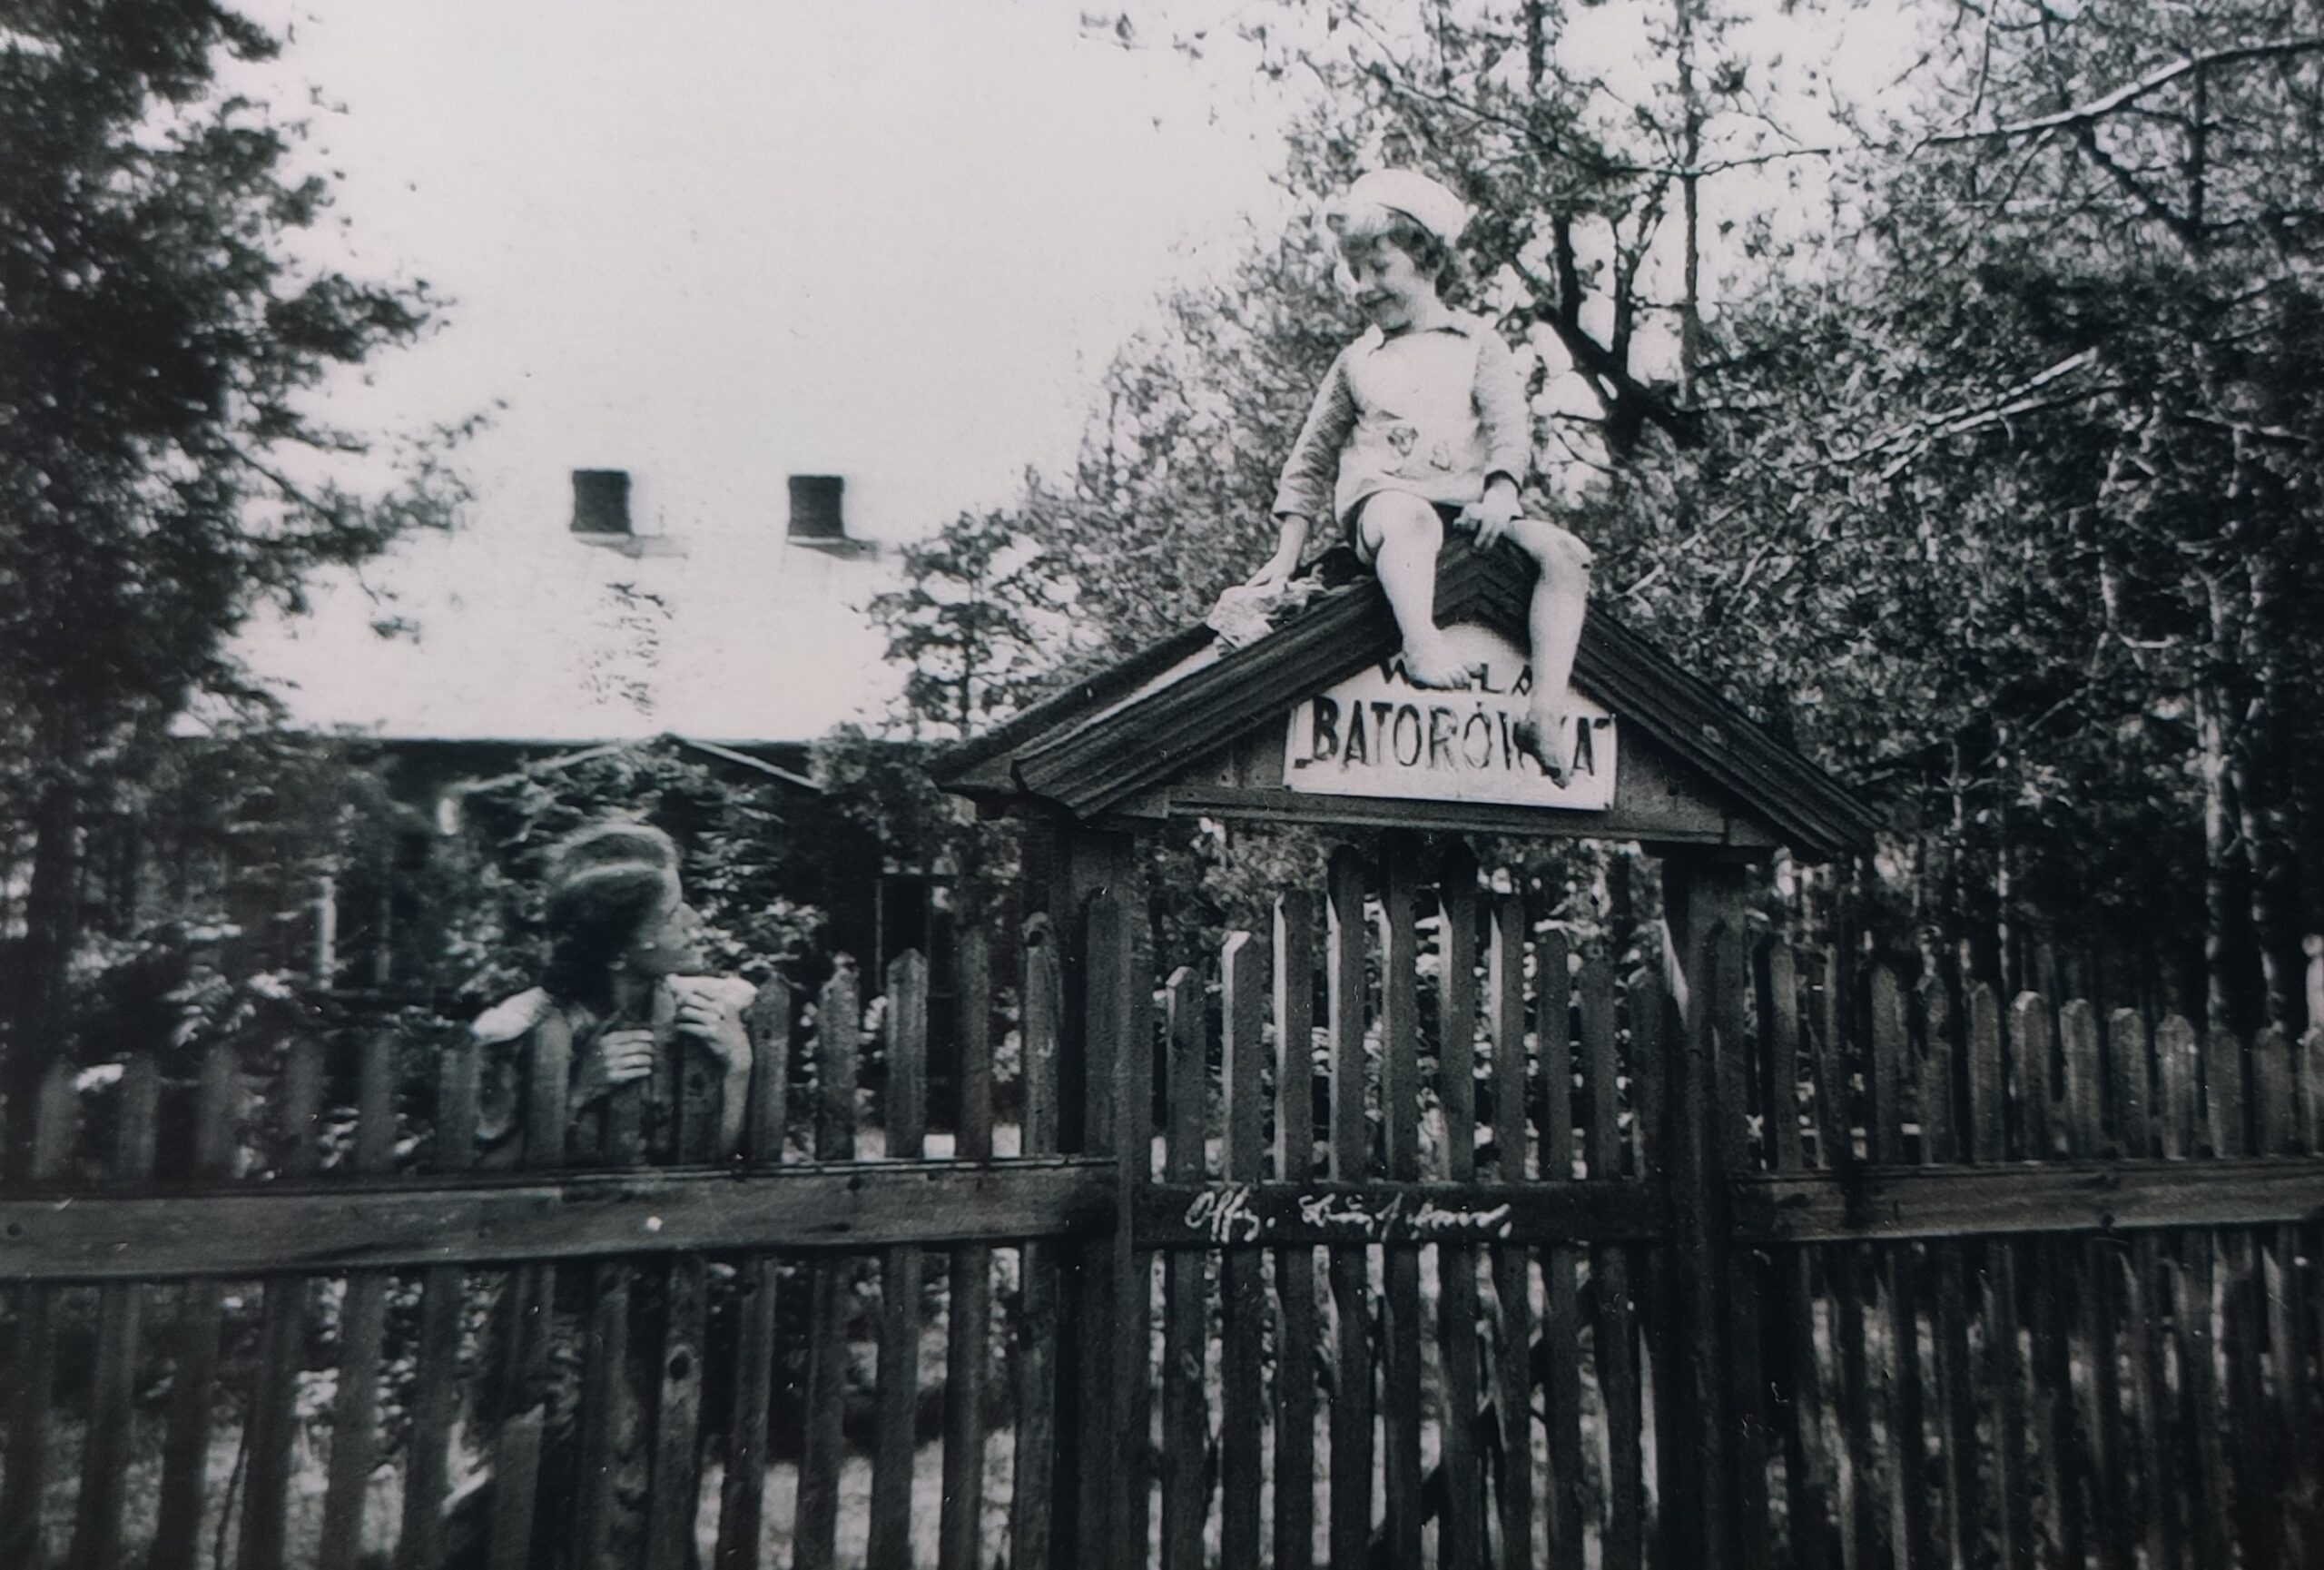 Drewniane ogrodzenie przed Willą Batorówka, nad którym widnieje napis Batorowka oraz siedzi mały chłopiec spoglądający na kobietę po lewej stronie.